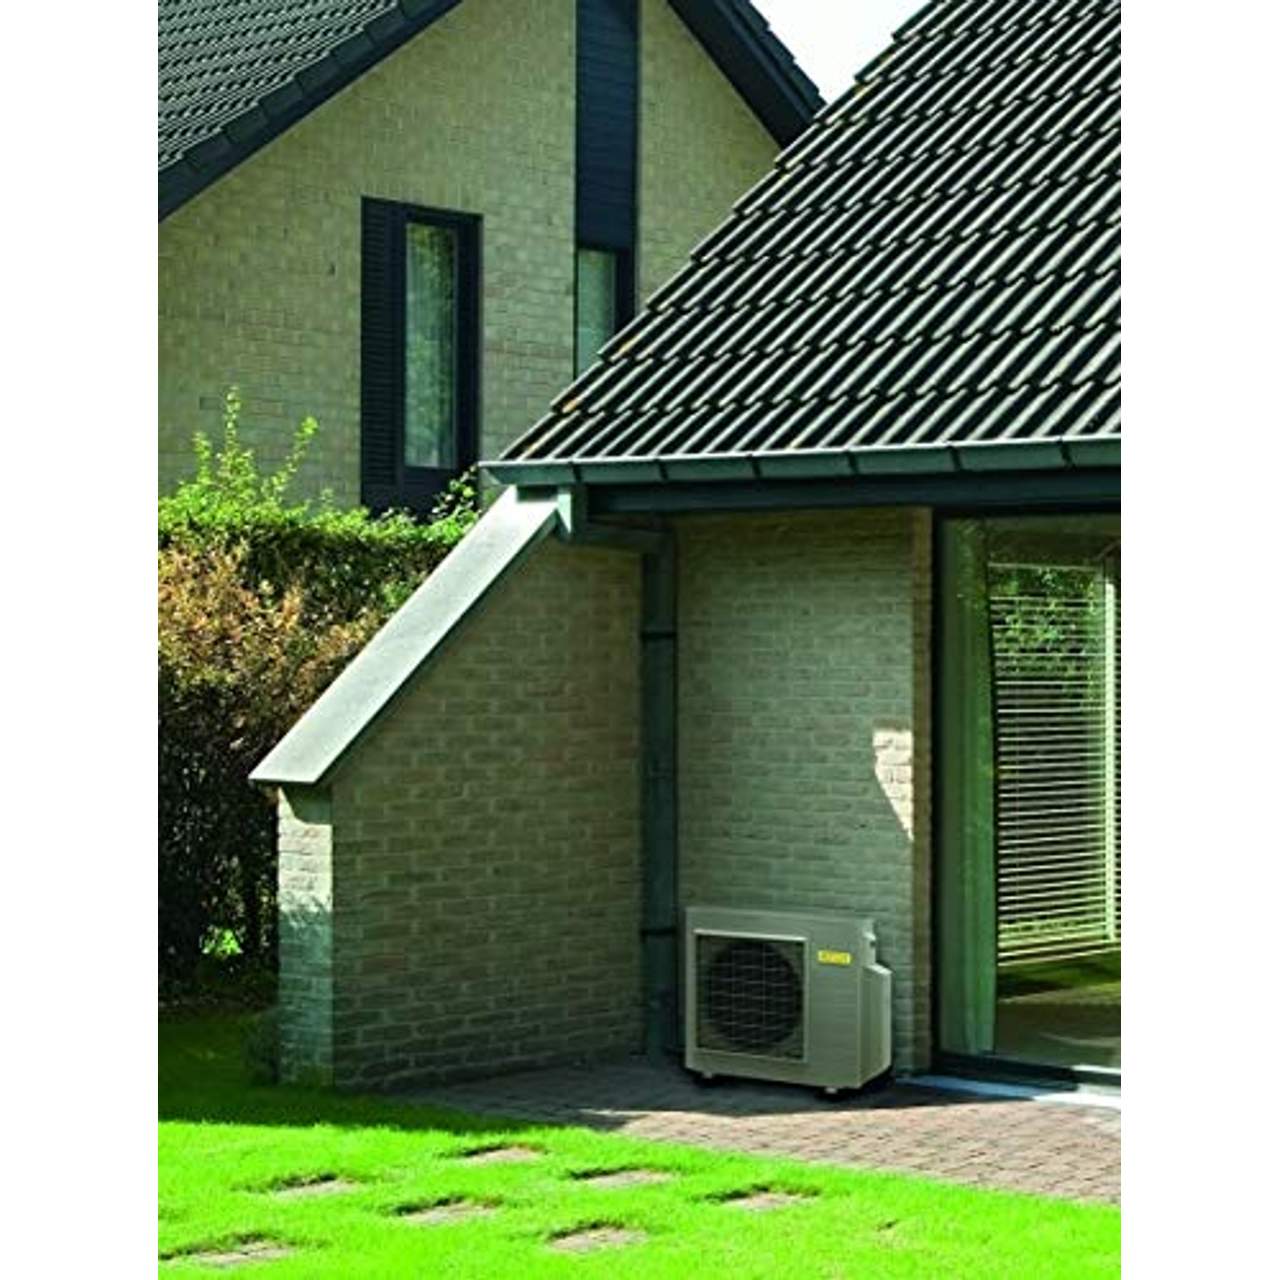 Funktionsweise der ROTEX HPSU monobloc - die Luft-/Wasser-Wärmepumpe für die Außenaufstellung.